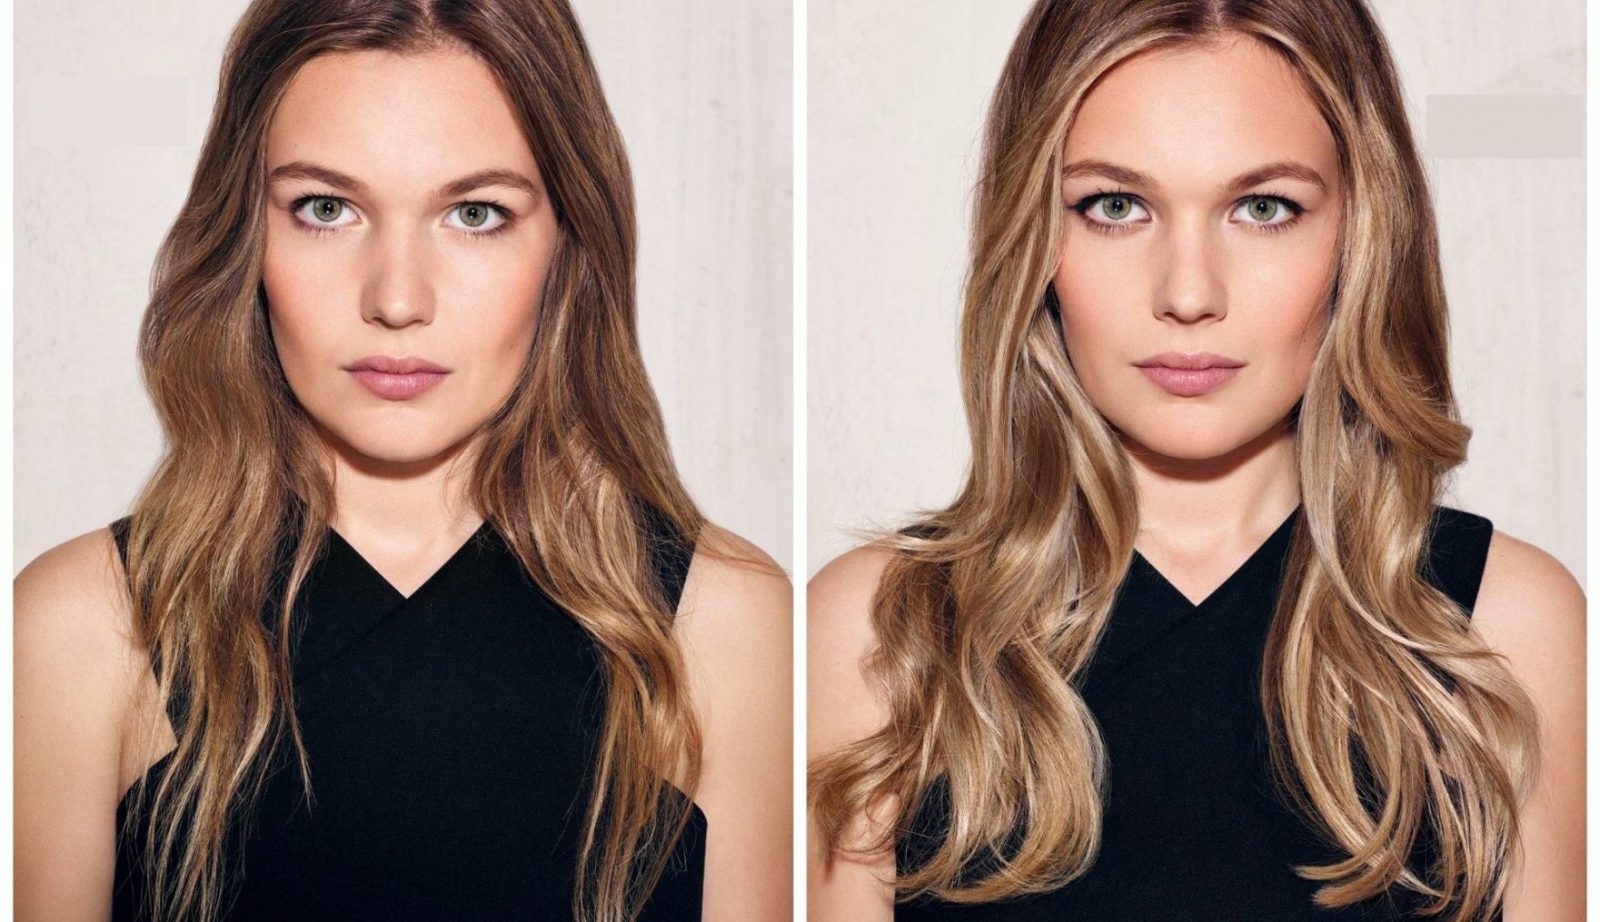 Окрашивание волос контуринг на русые волосы фото до и после